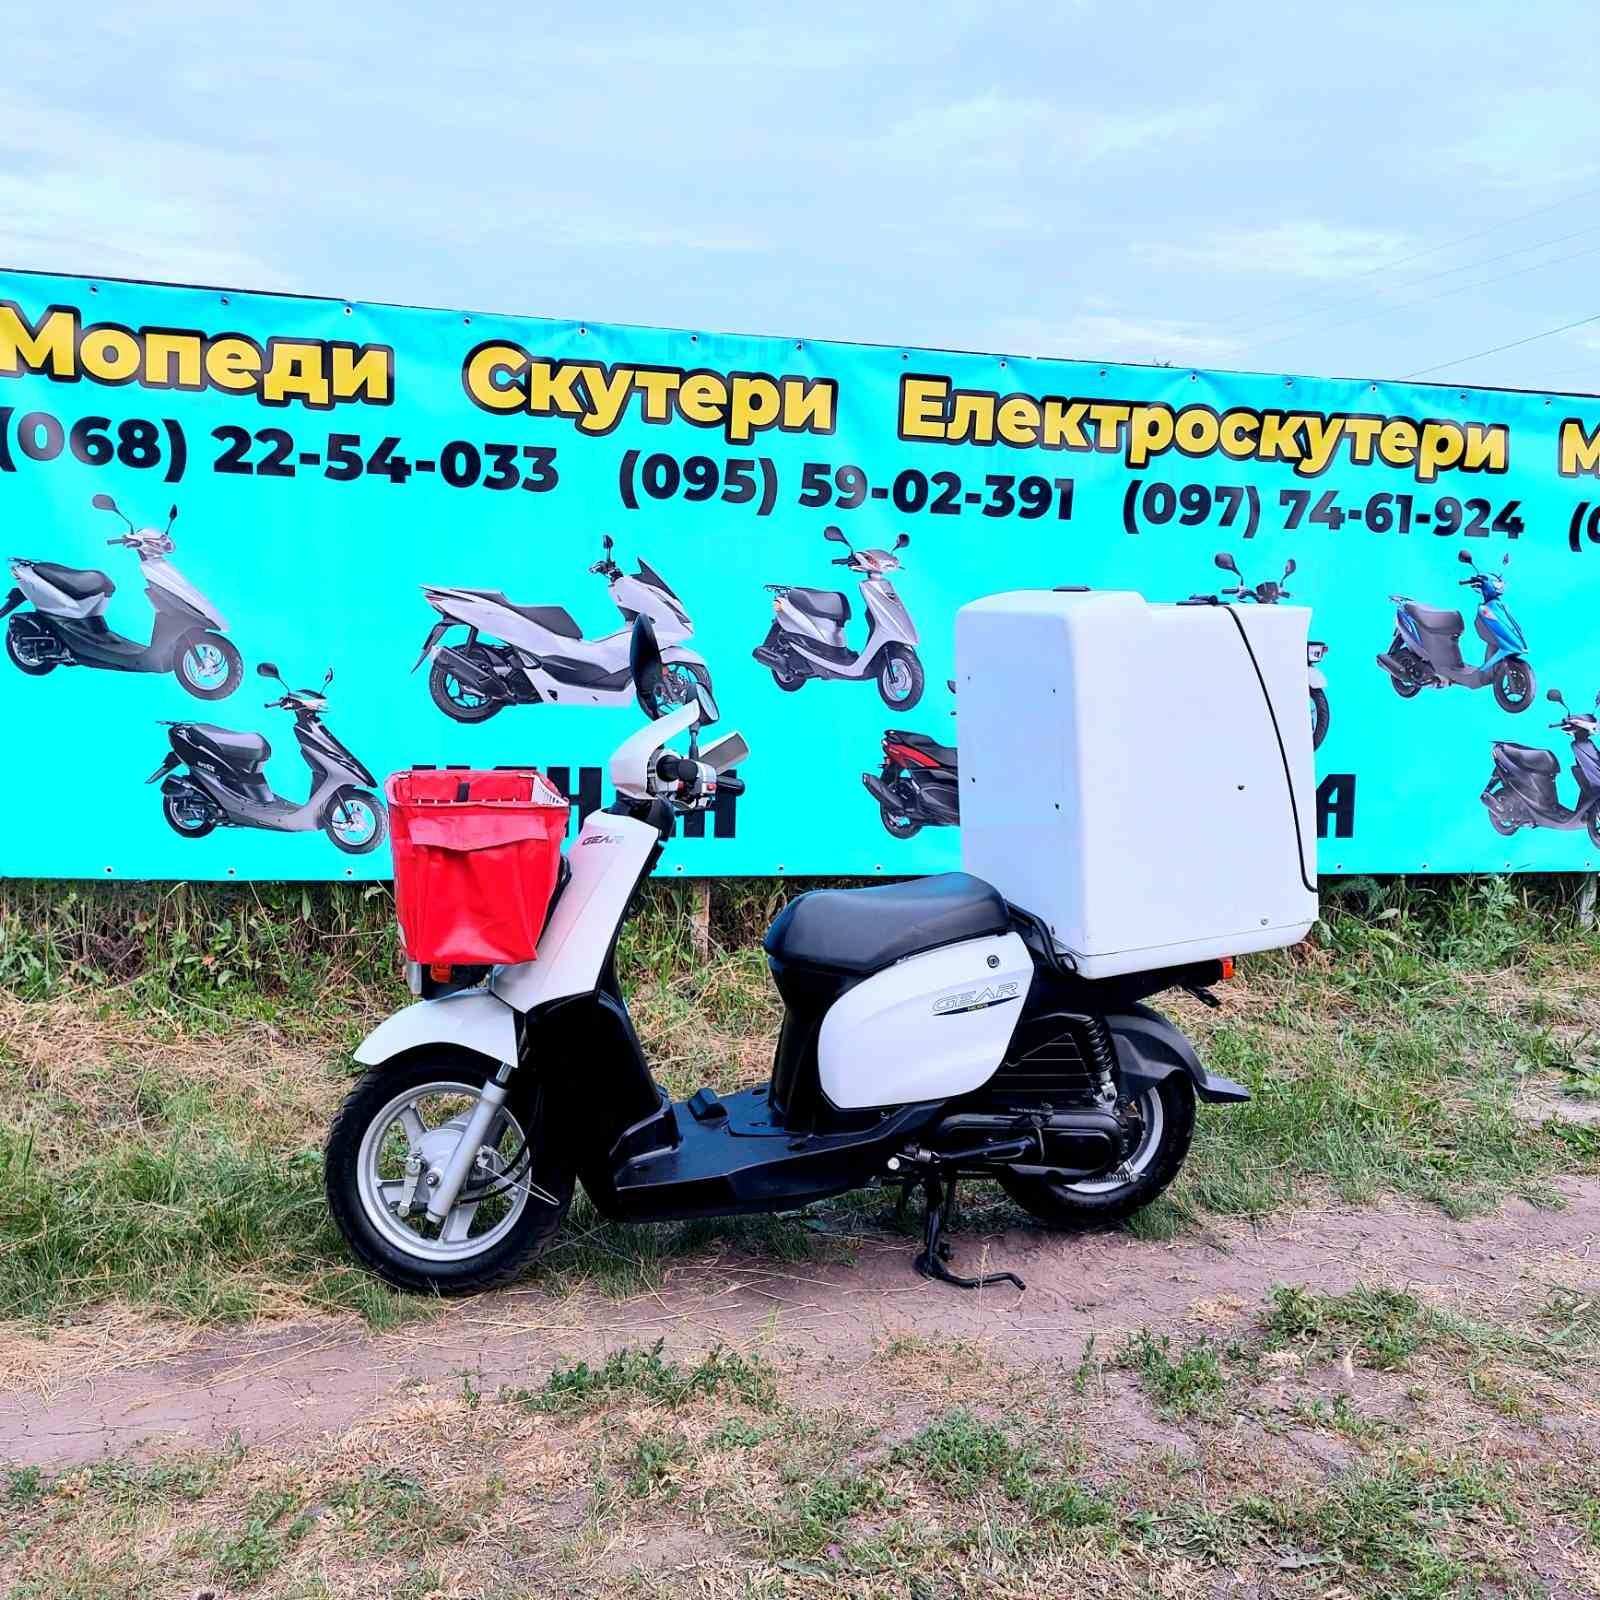 Продажа Ямаха Джог 16 без пробігу по Україні.Yamaha Jog16 JOG Доставка